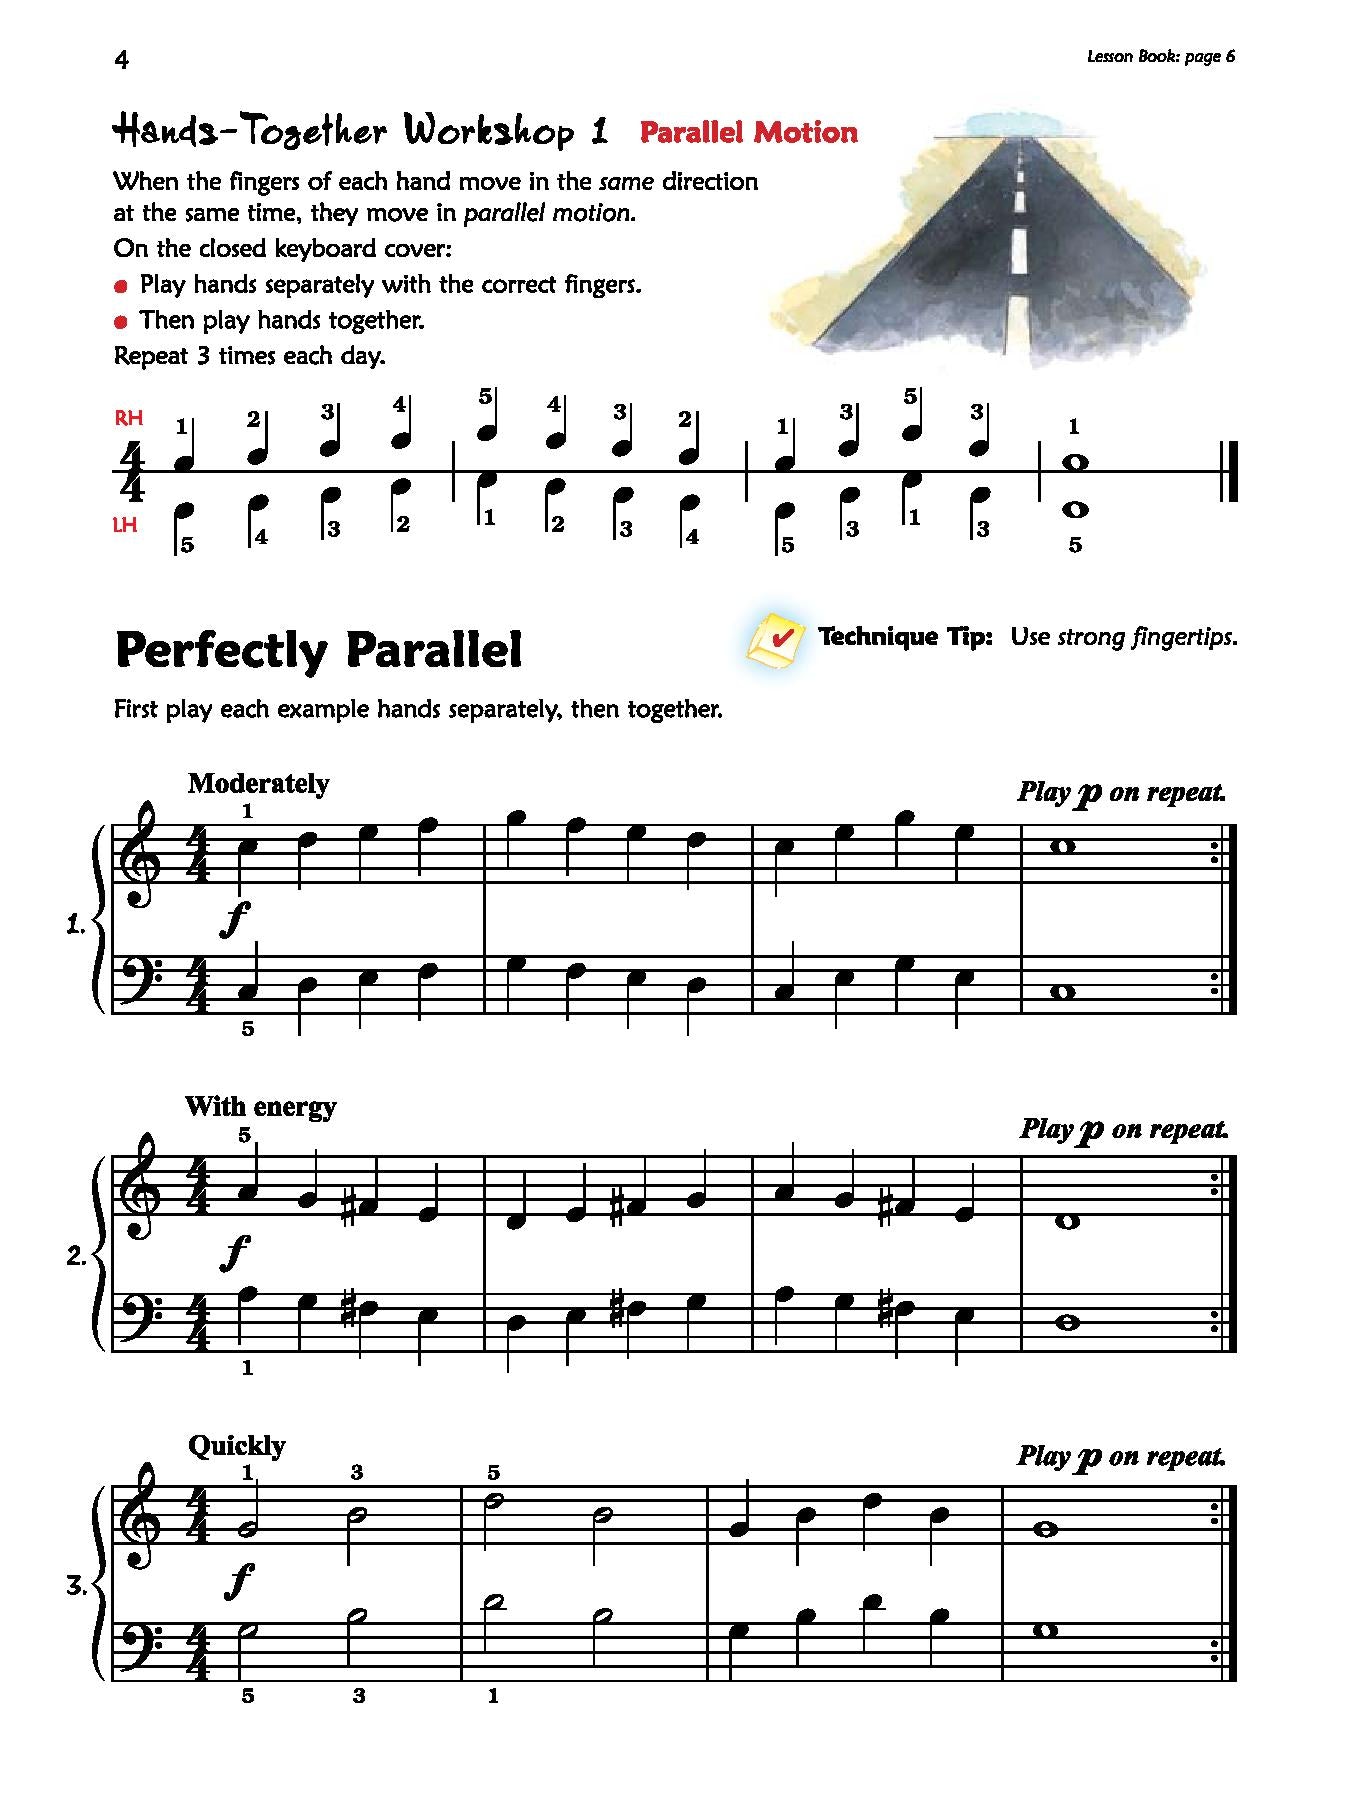 Alfred's Premier Piano Course, Technique 2A